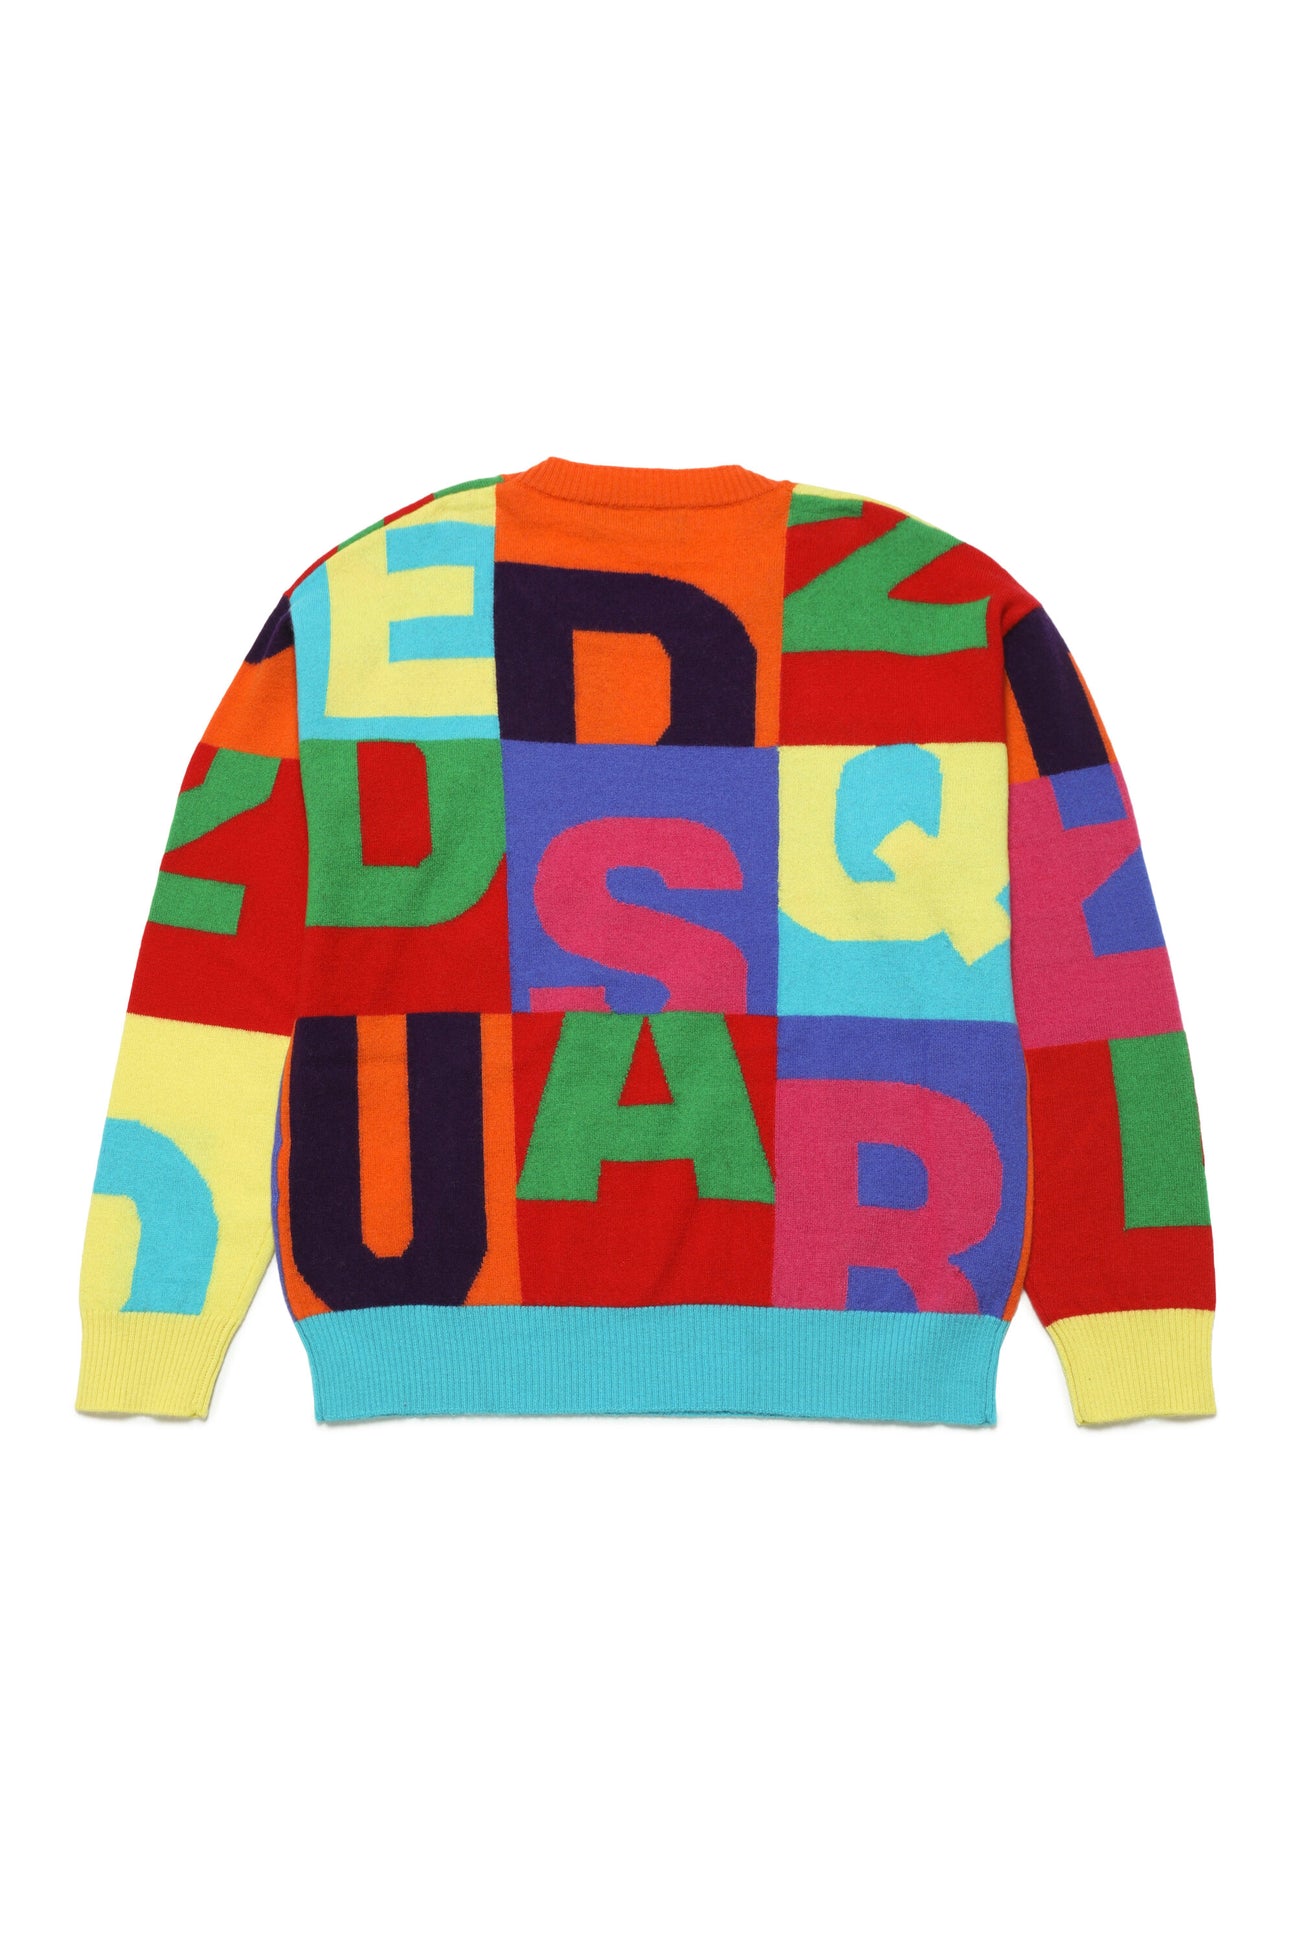 Jersey de cuello redondo de lana en bloques de color con frases Jersey de cuello redondo de lana en bloques de color con frases